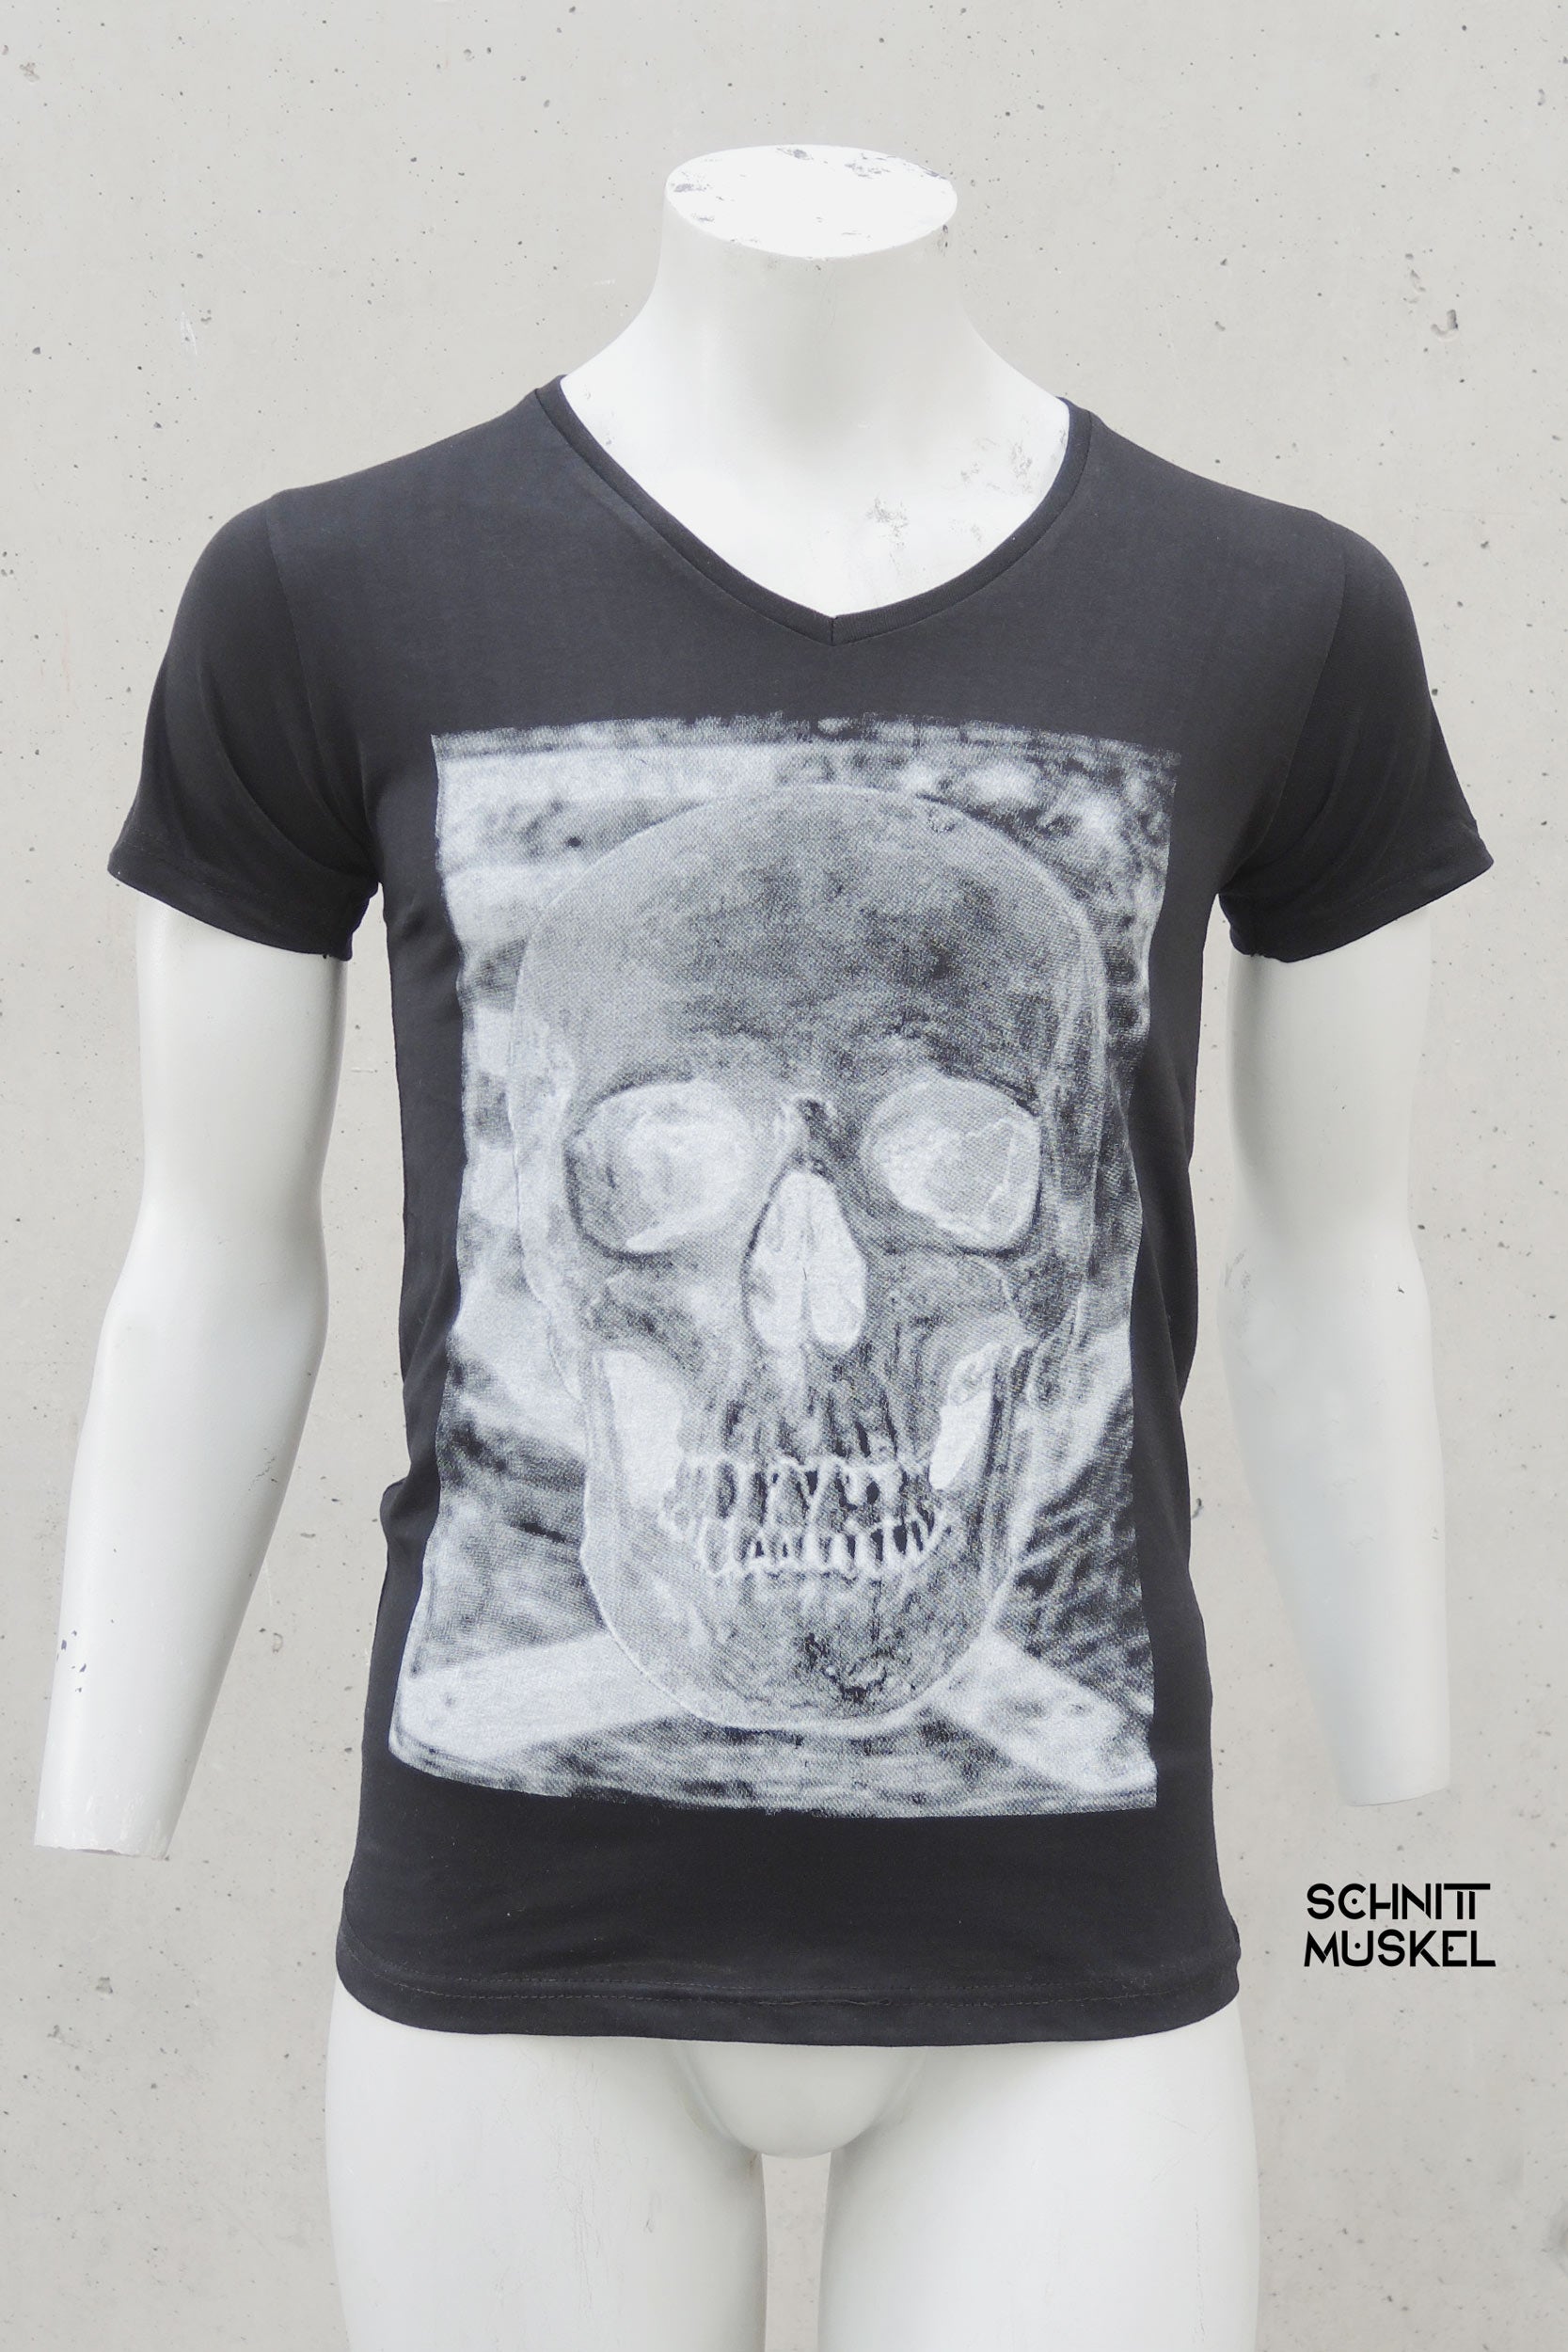 T-Shirt mit Totenkopf, Totenkopfschirt, Gothocshirt, Rockershirt, Shirt mit Schädel